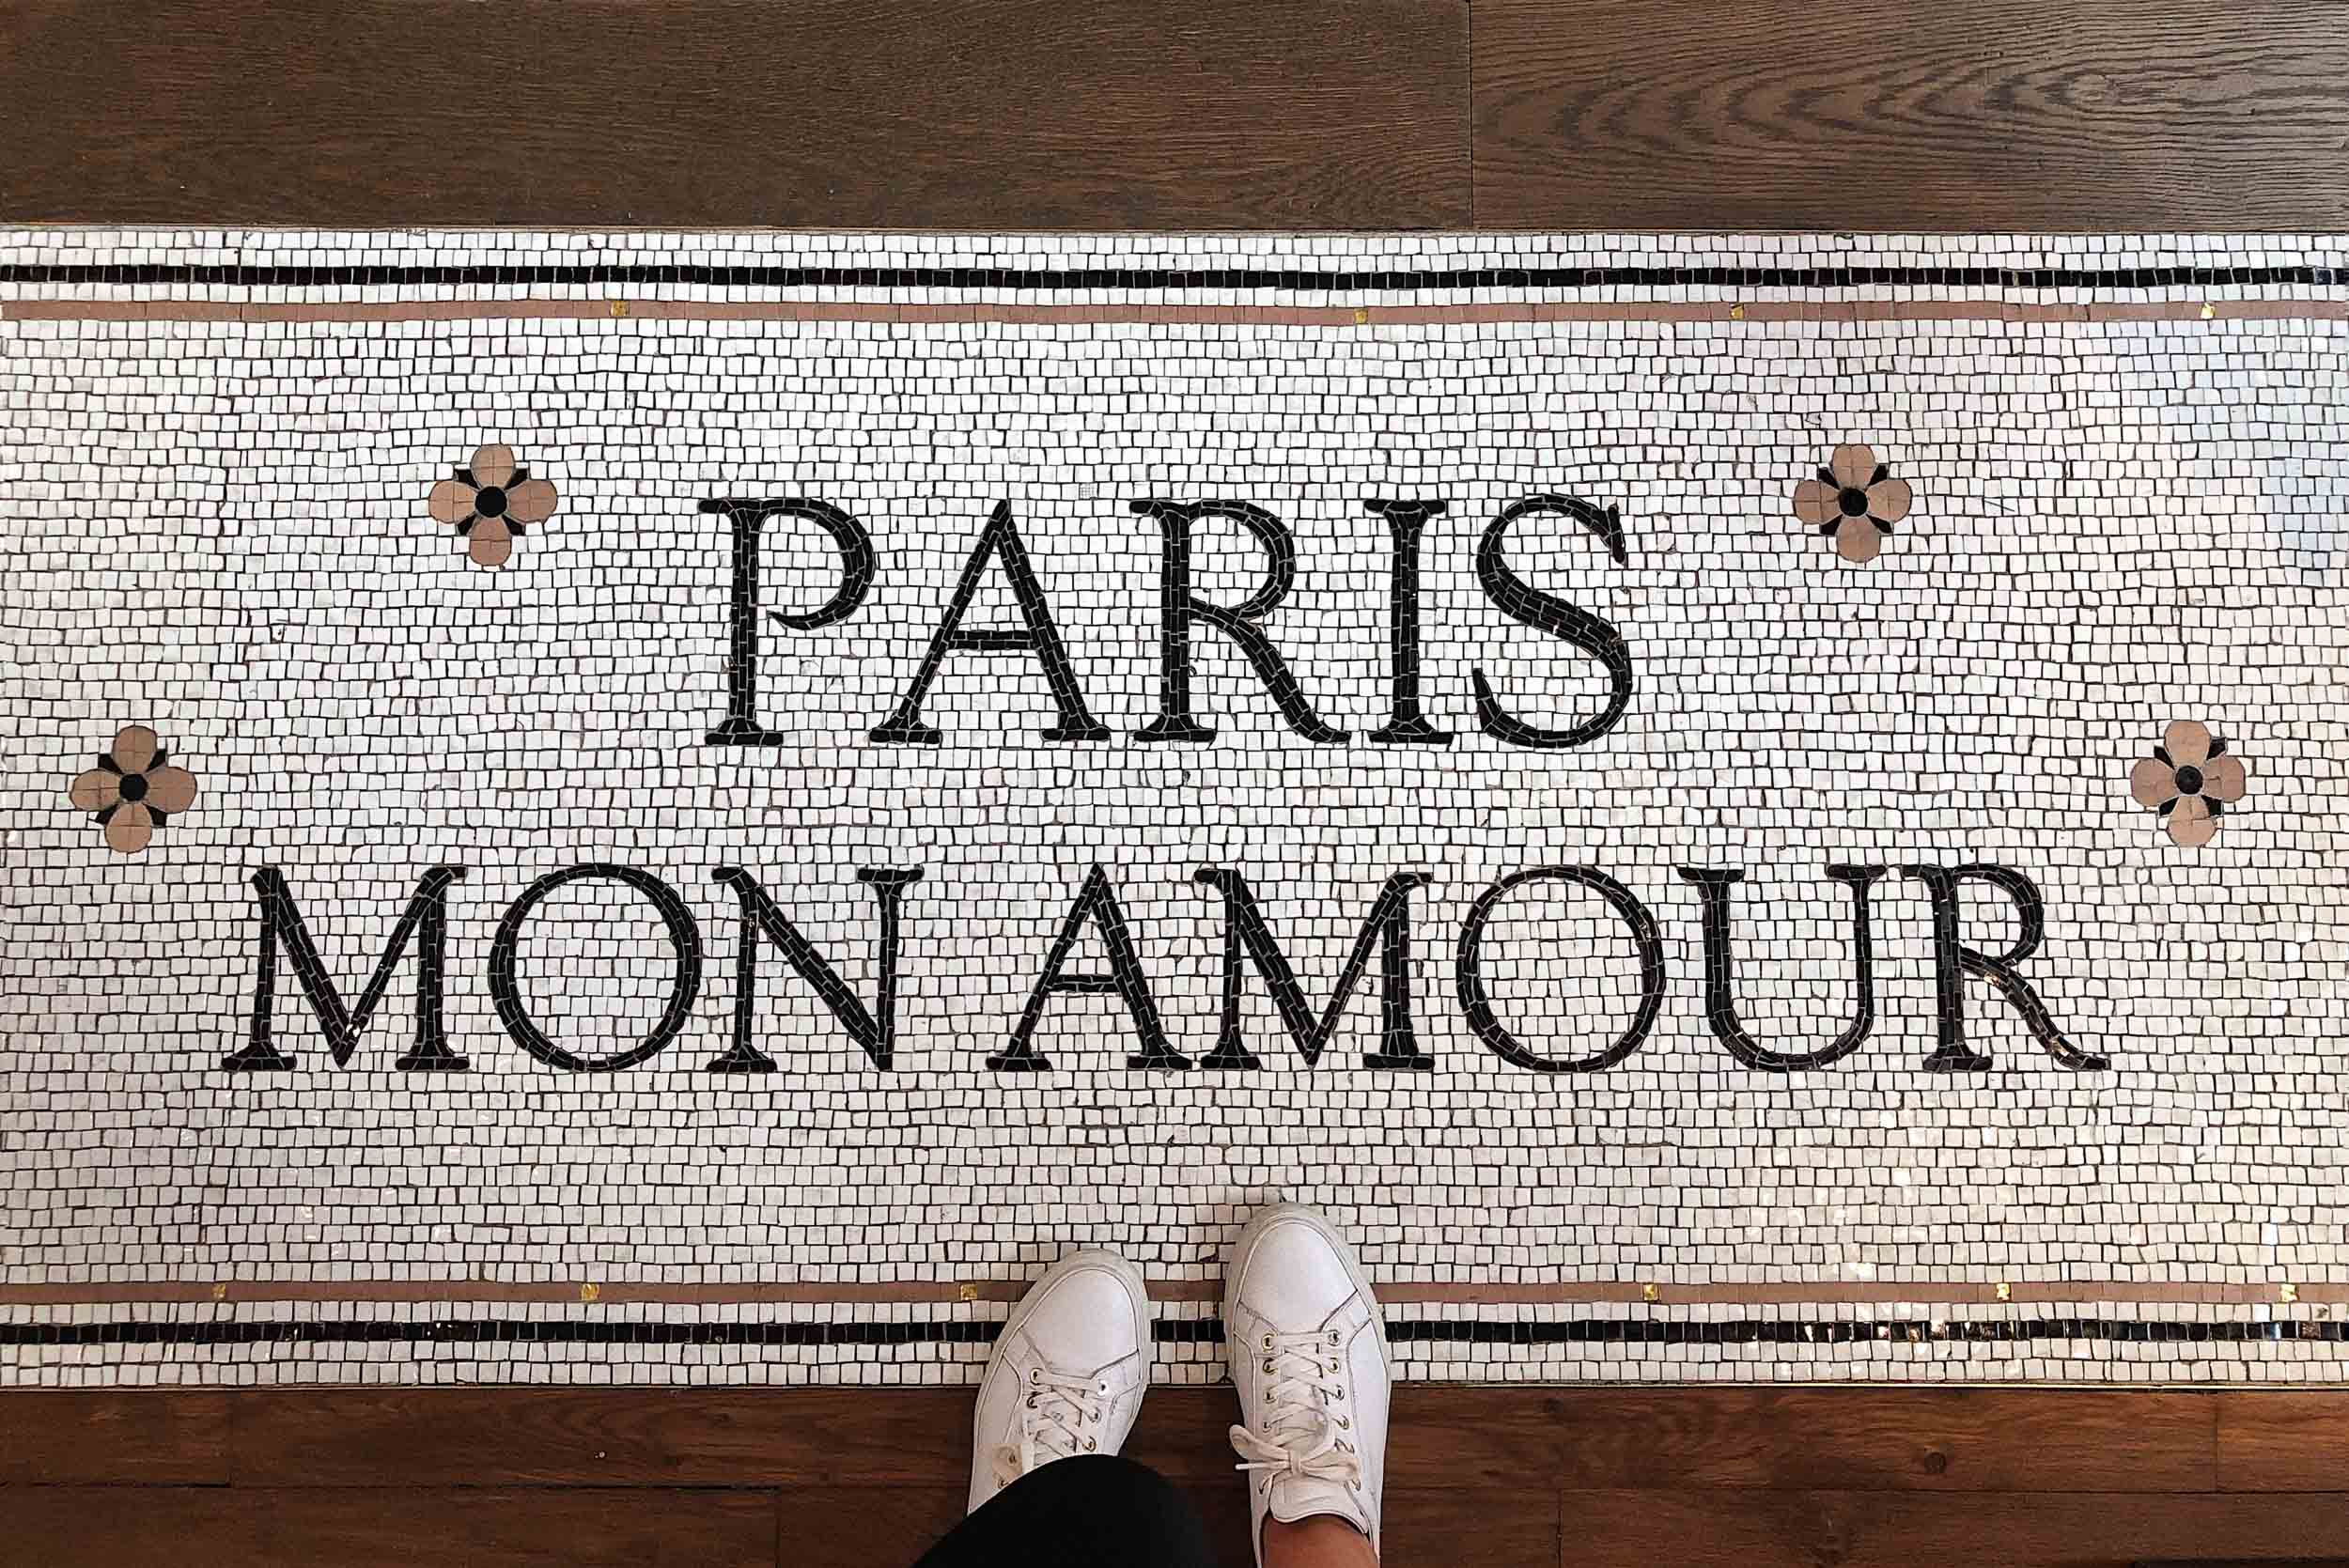 Paris mon amour! The most common language spoken in Paris is French